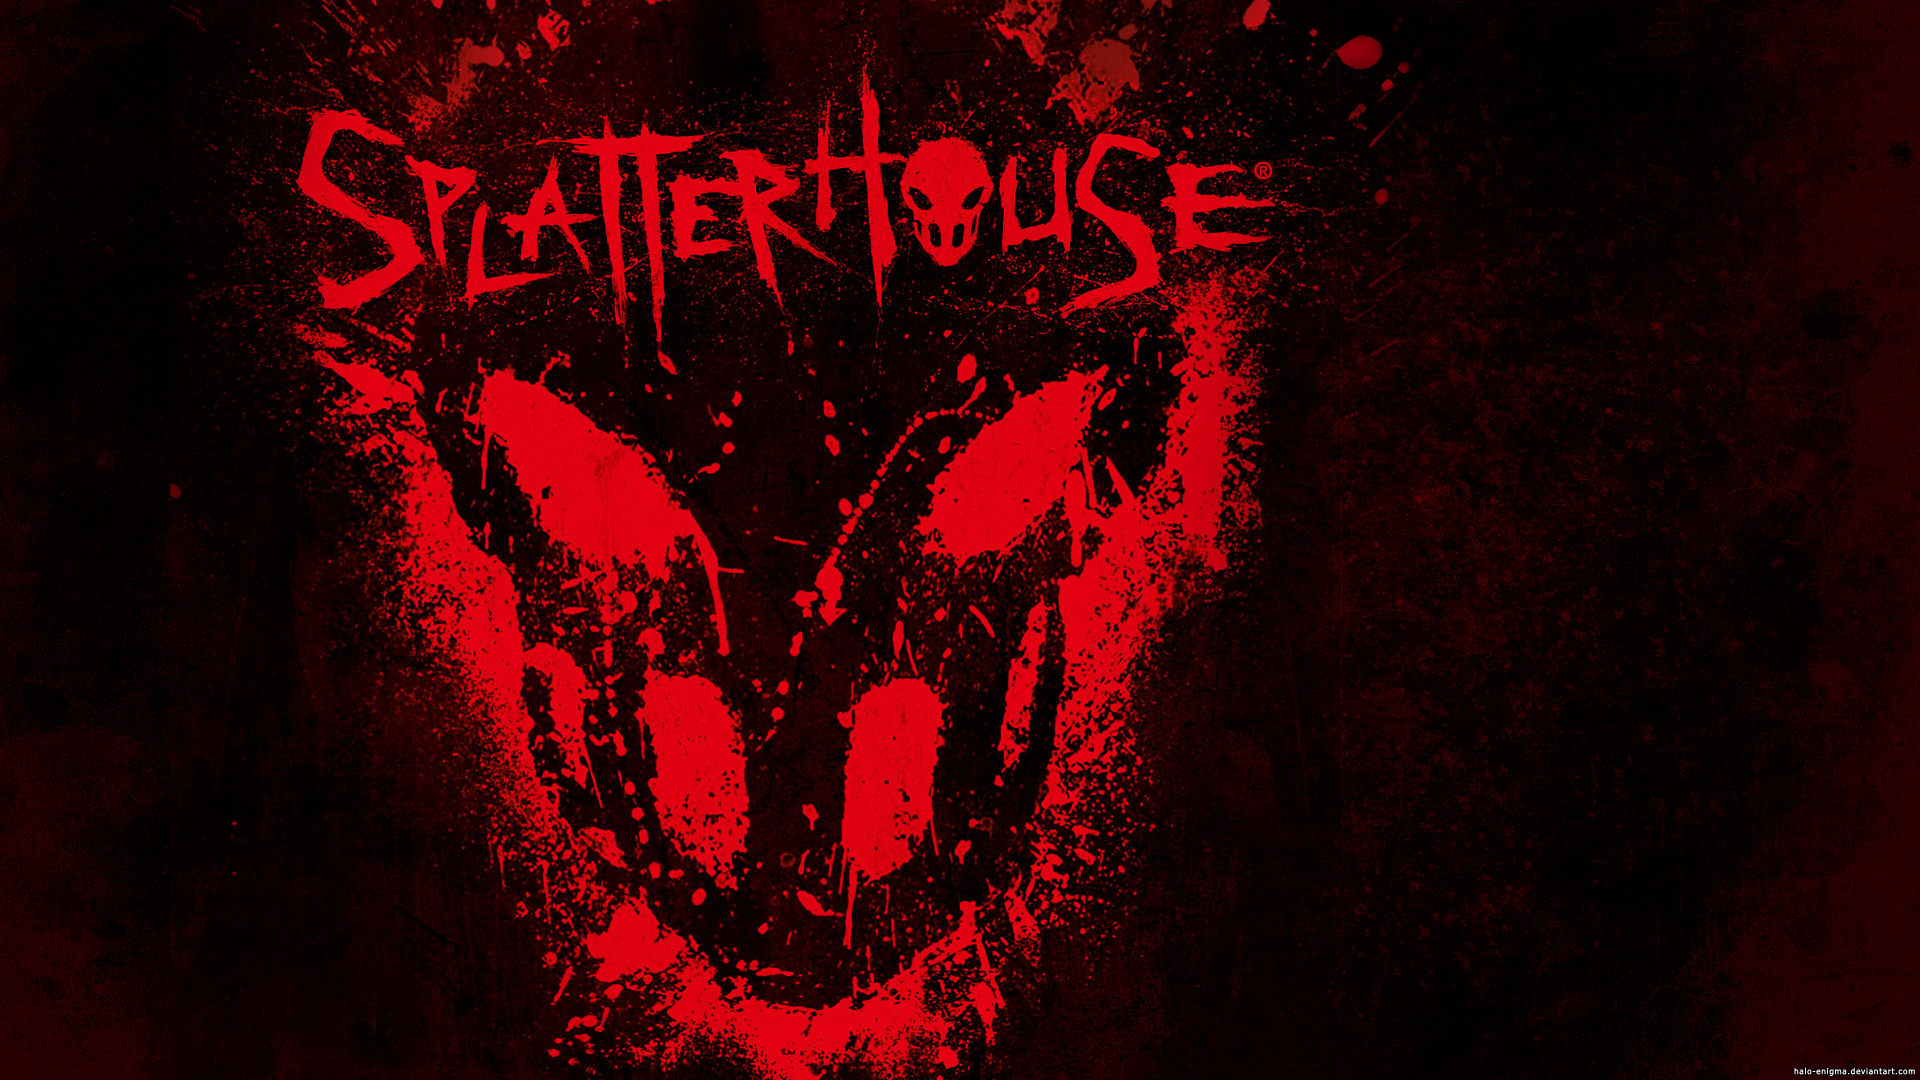 splatterhouse download free